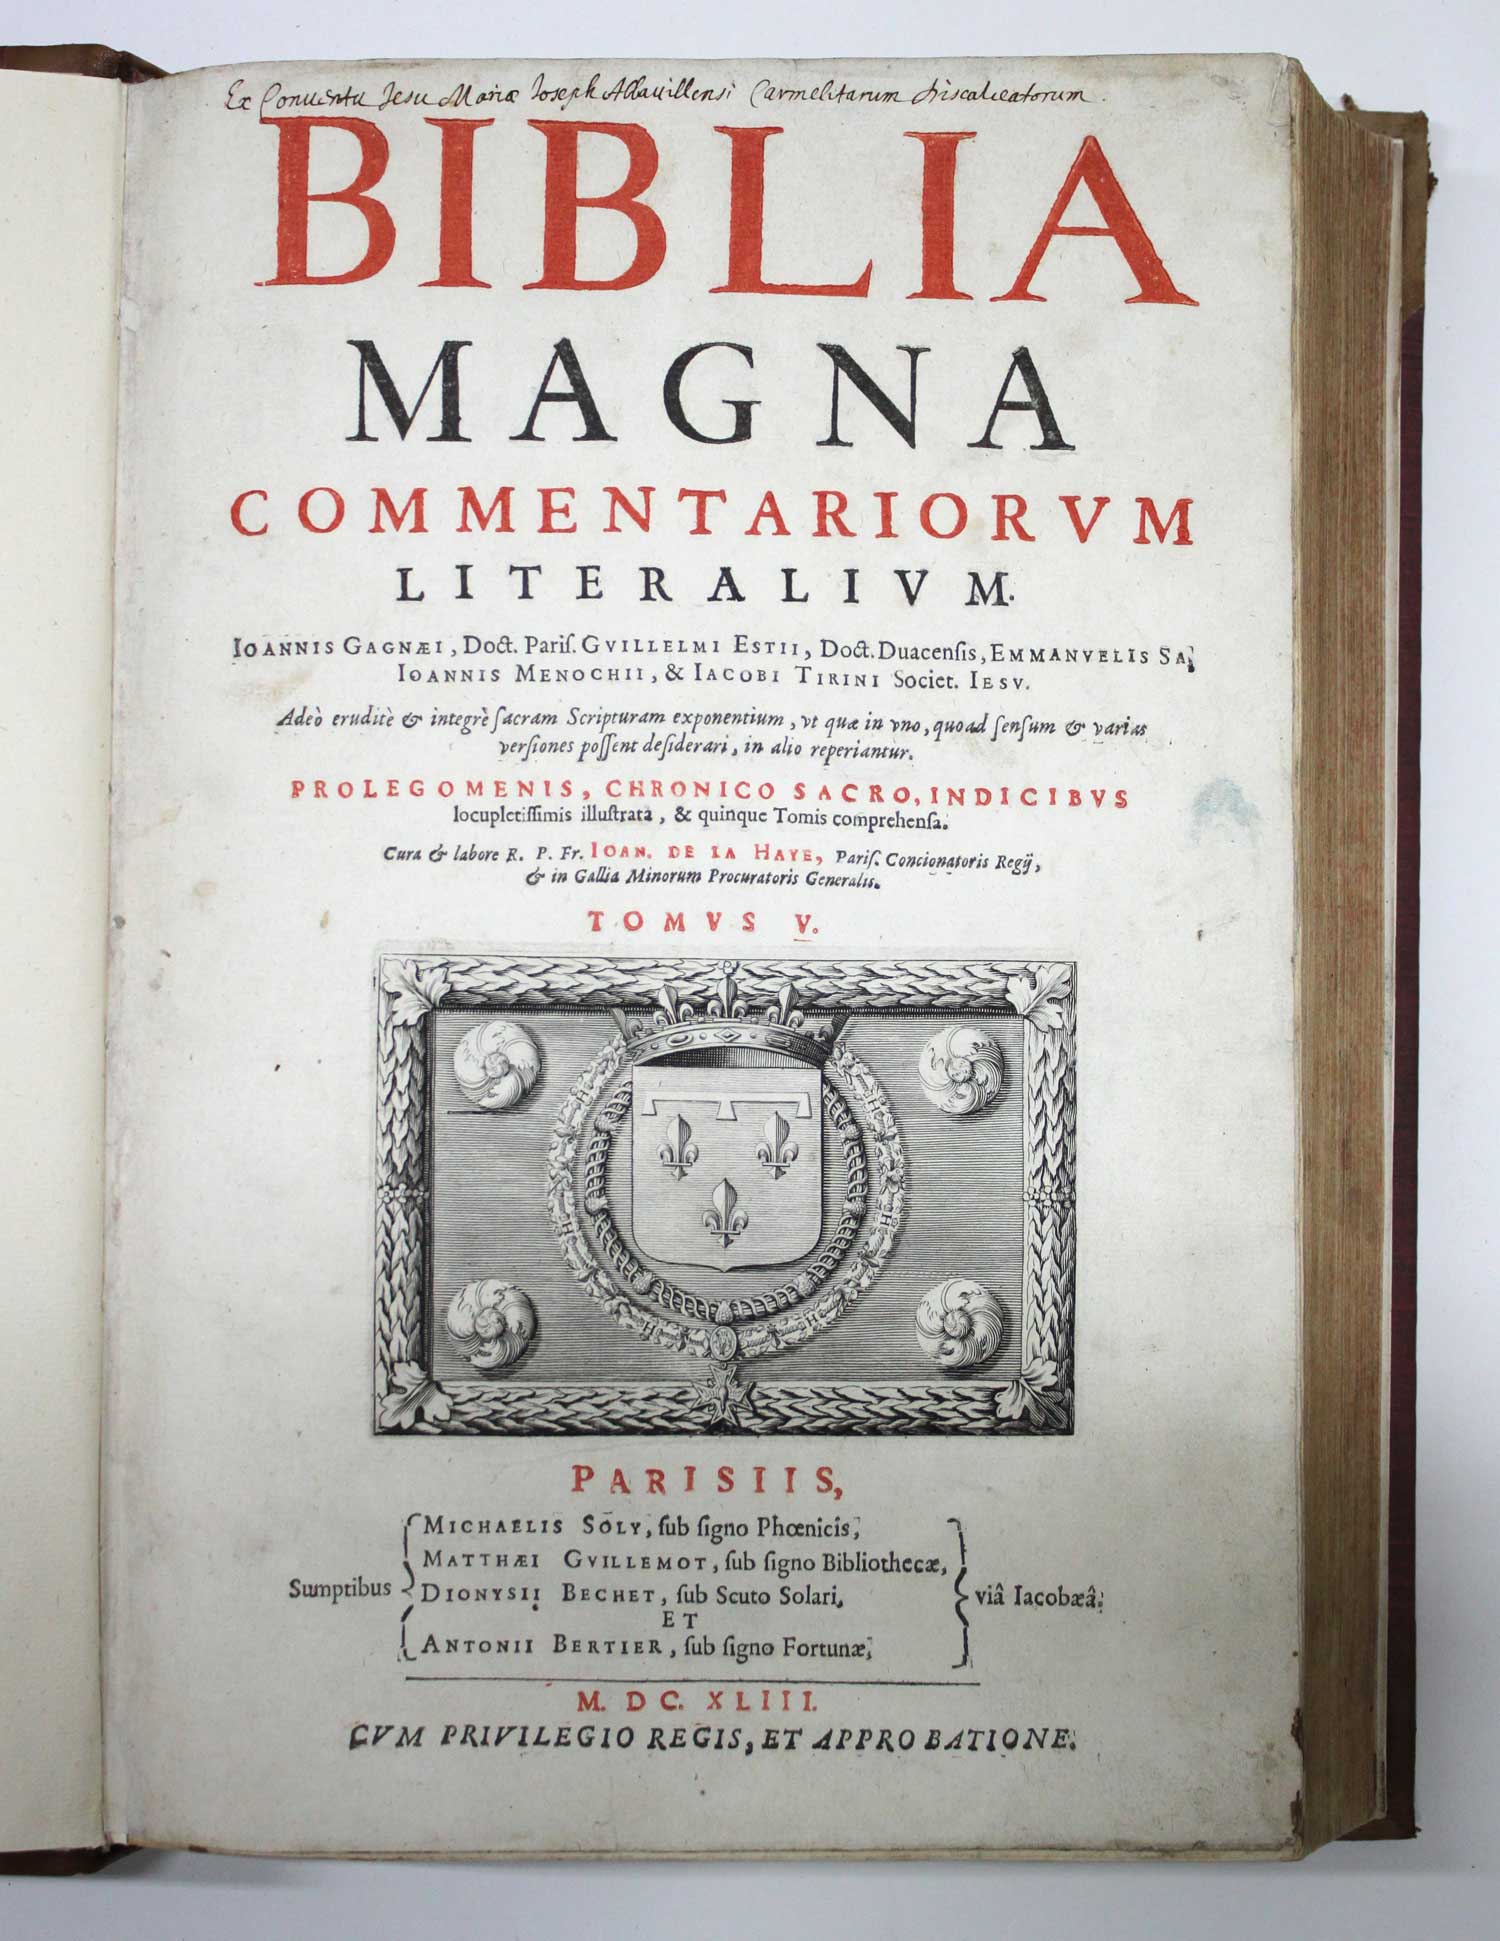 Biblia magna commentariorum literalium Joannis Ganaei, Guillelmi Estii, Emmanuelis Sa, Ioannis - Image 2 of 11